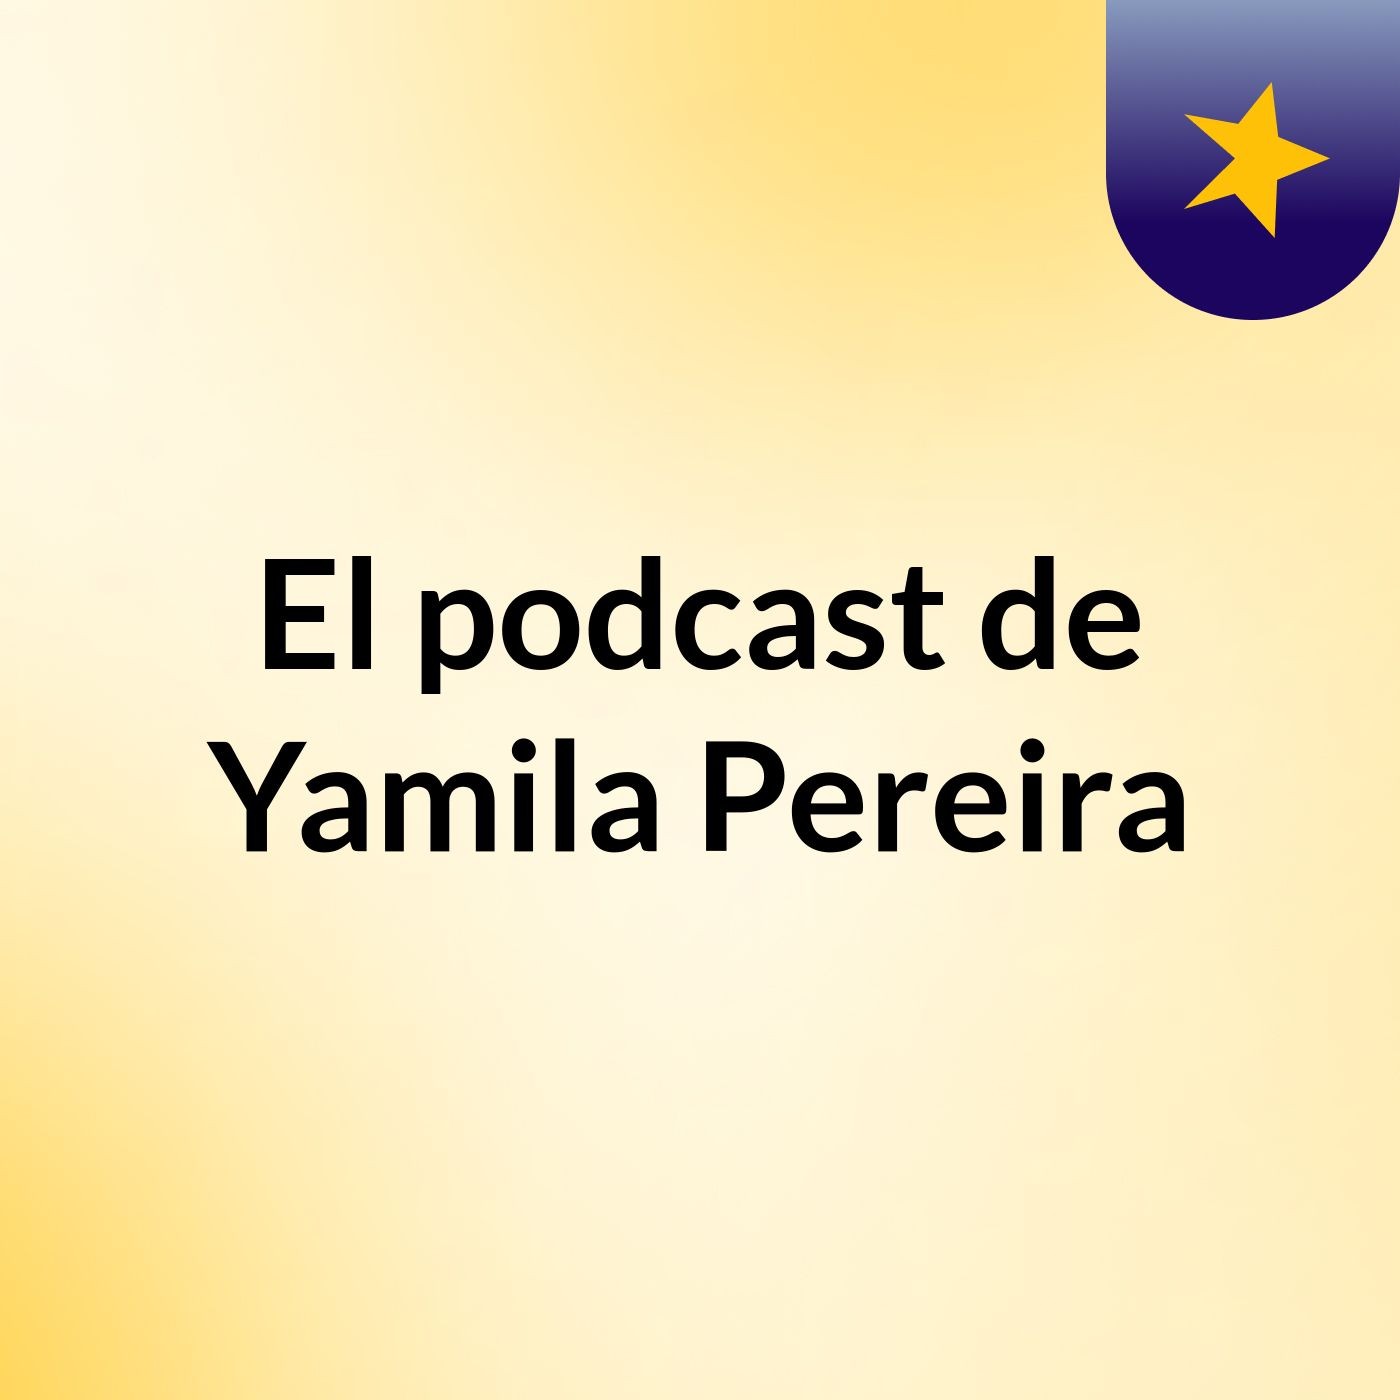 El podcast de Yamila Pereira